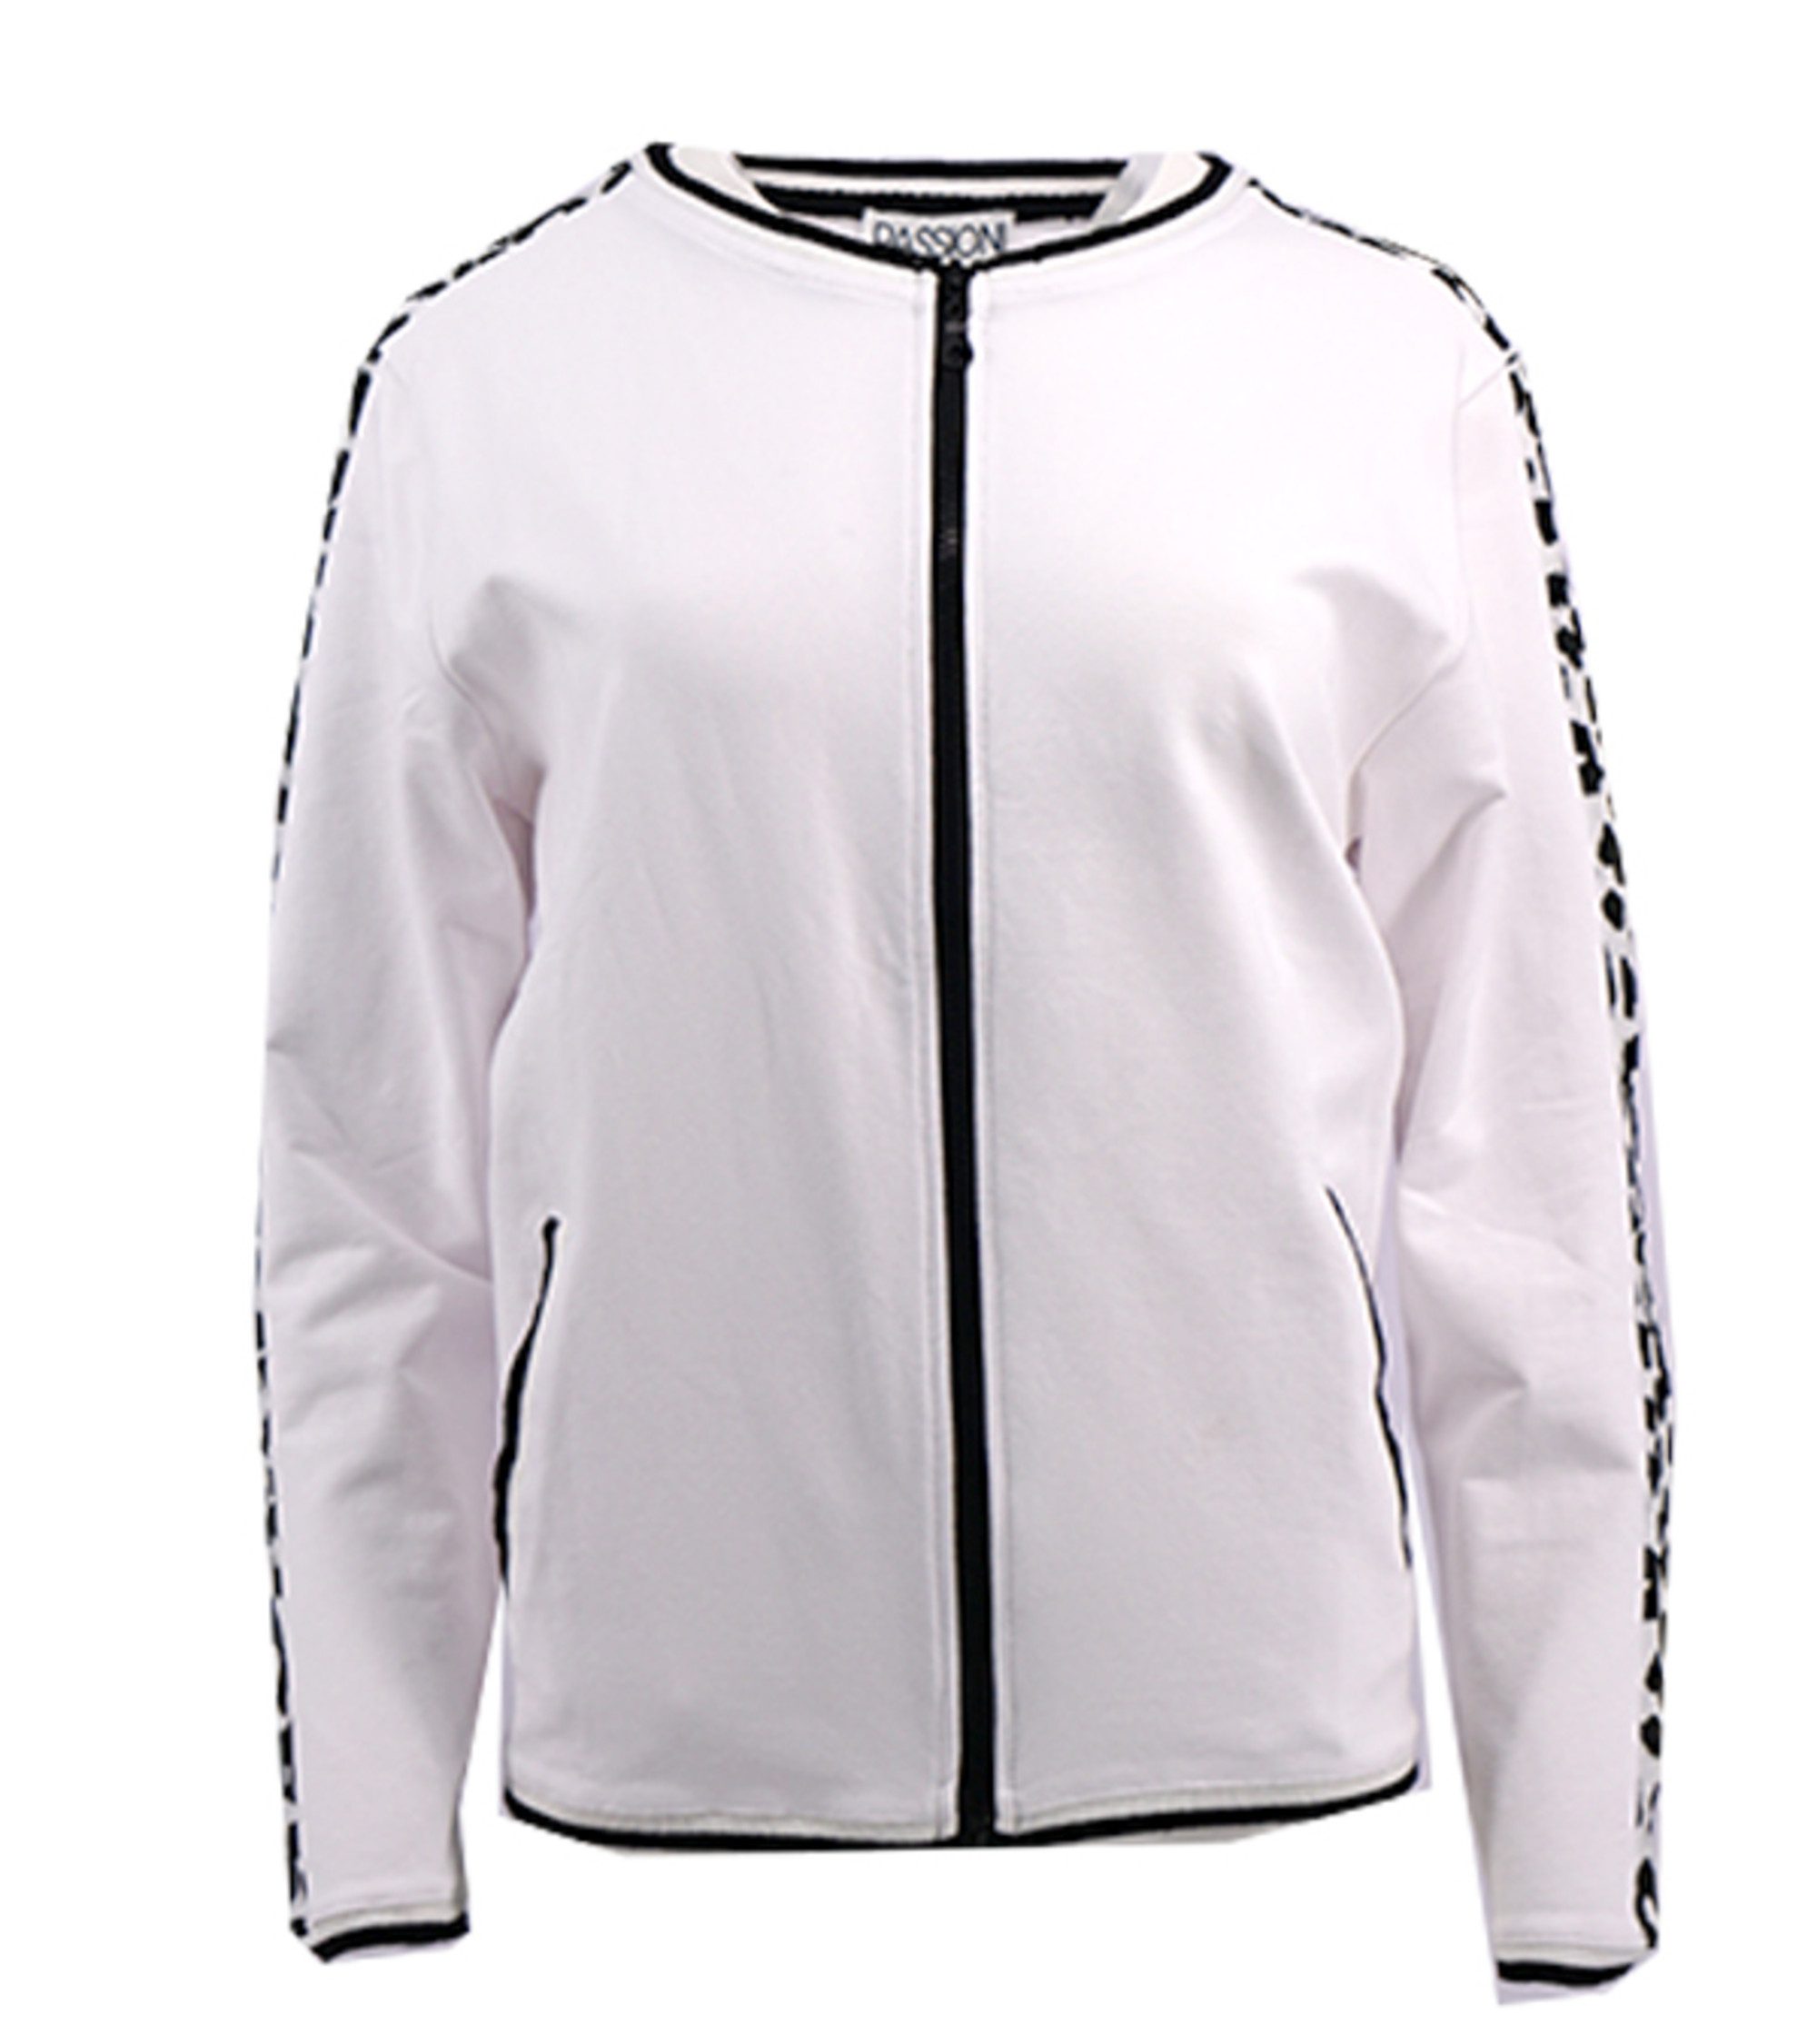 Passioni Sommerjacke Sportliche Jacke in Weiß mit Leopardenmuster - Streifen an den Ärmeln